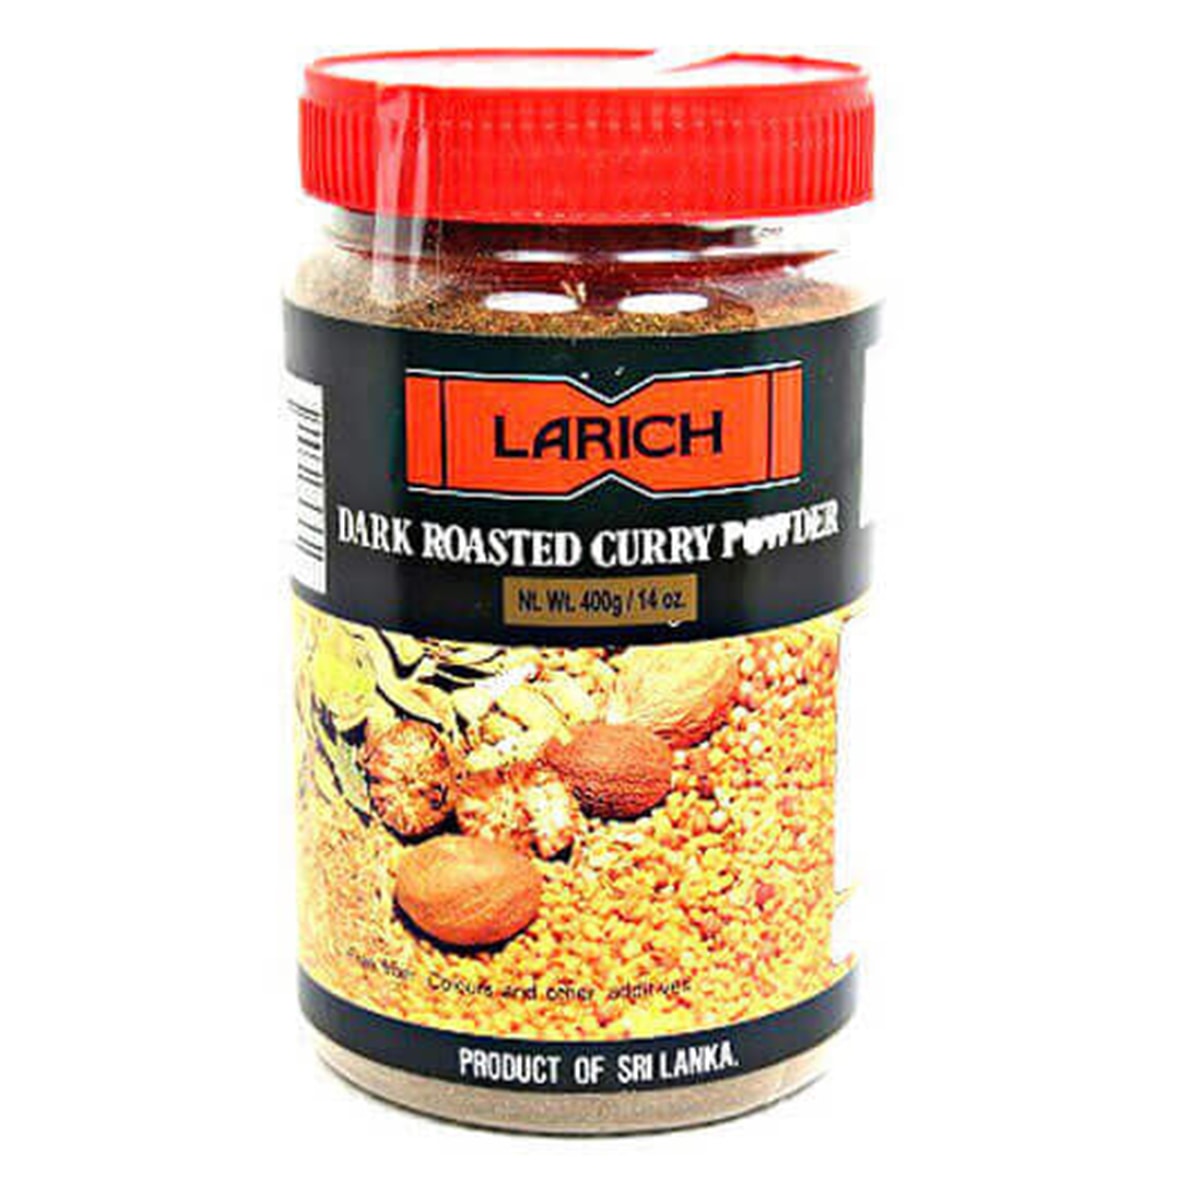 Buy Larich Dark Roasted Curry Powder - 400 gm